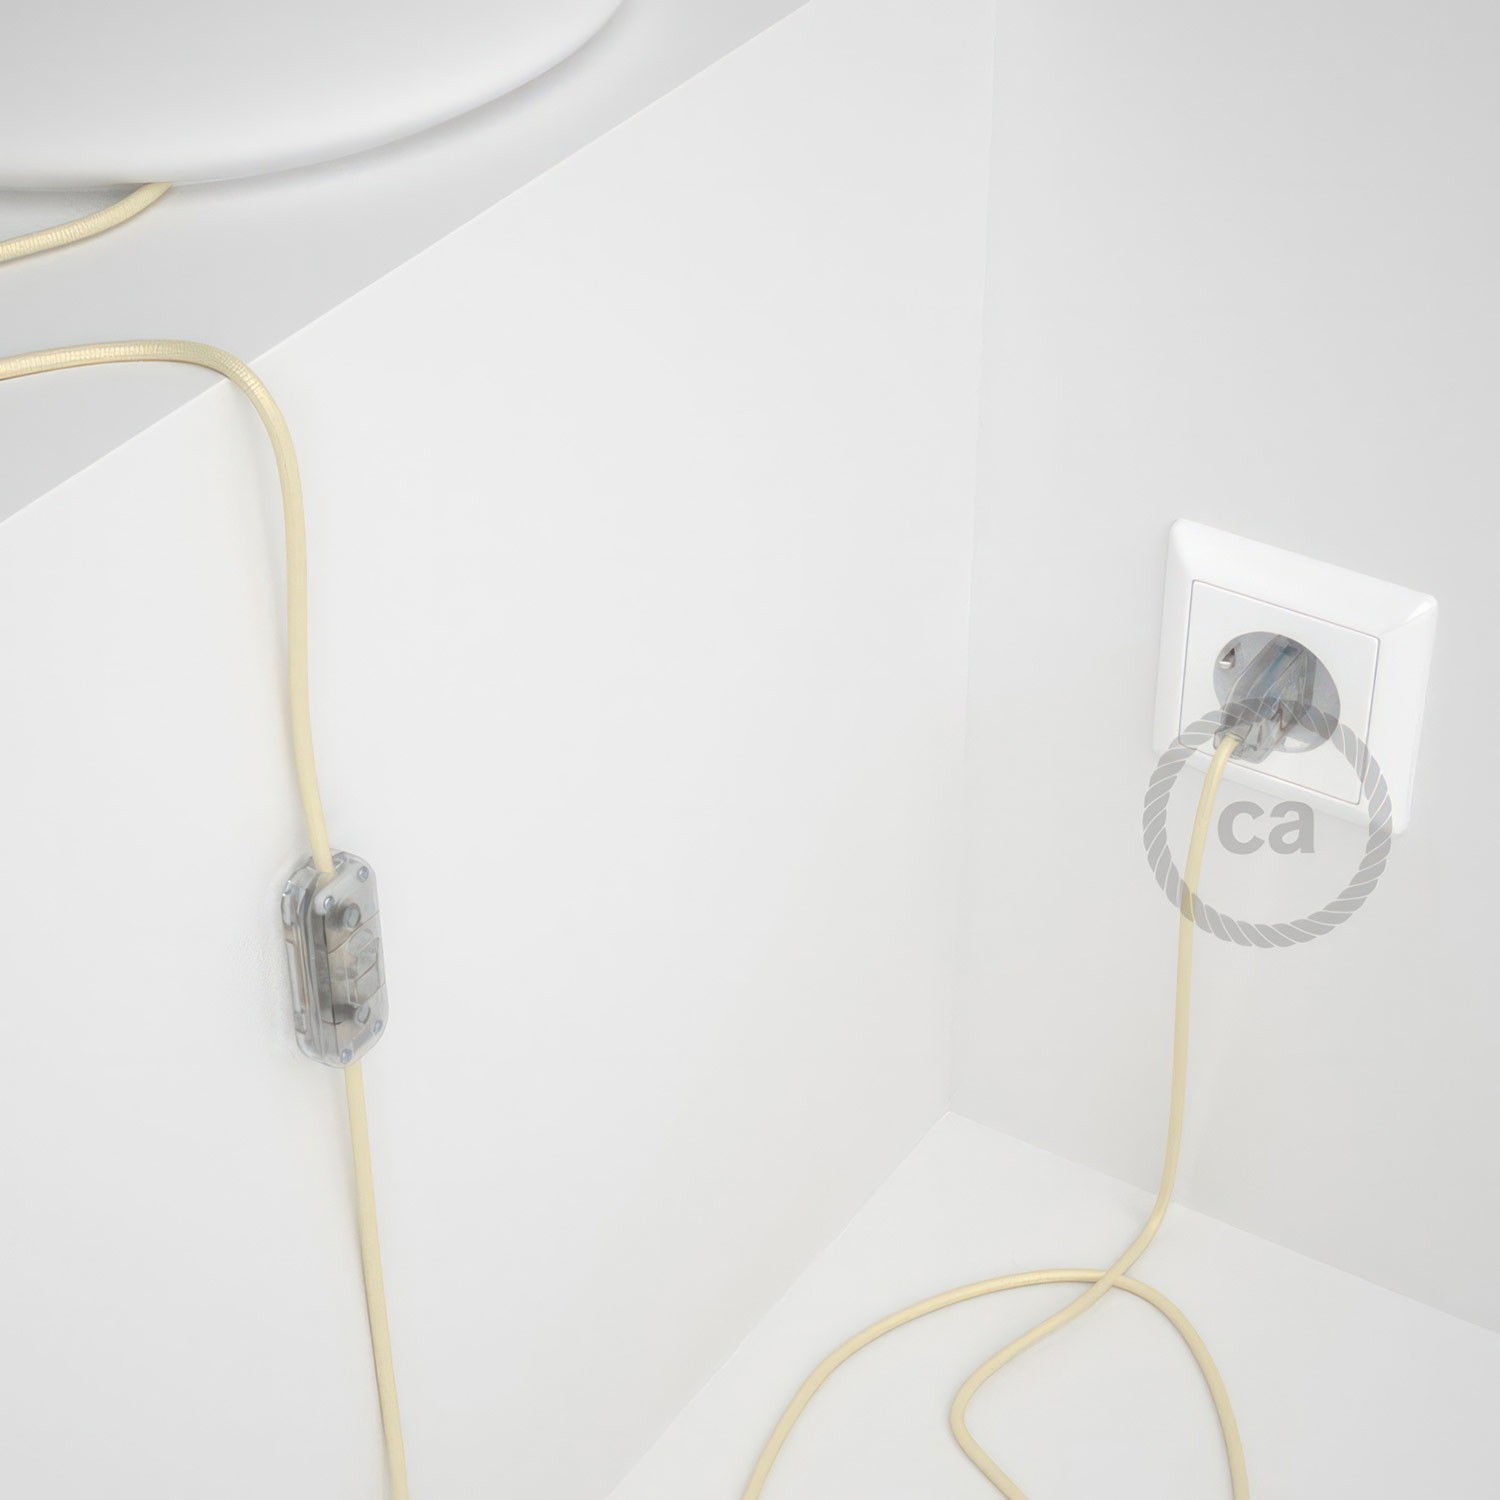 Cableado para lámpara, cable RM00 Efecto Seda Marfil 1,8m. Elige tu el color de la clavija y del interruptor!